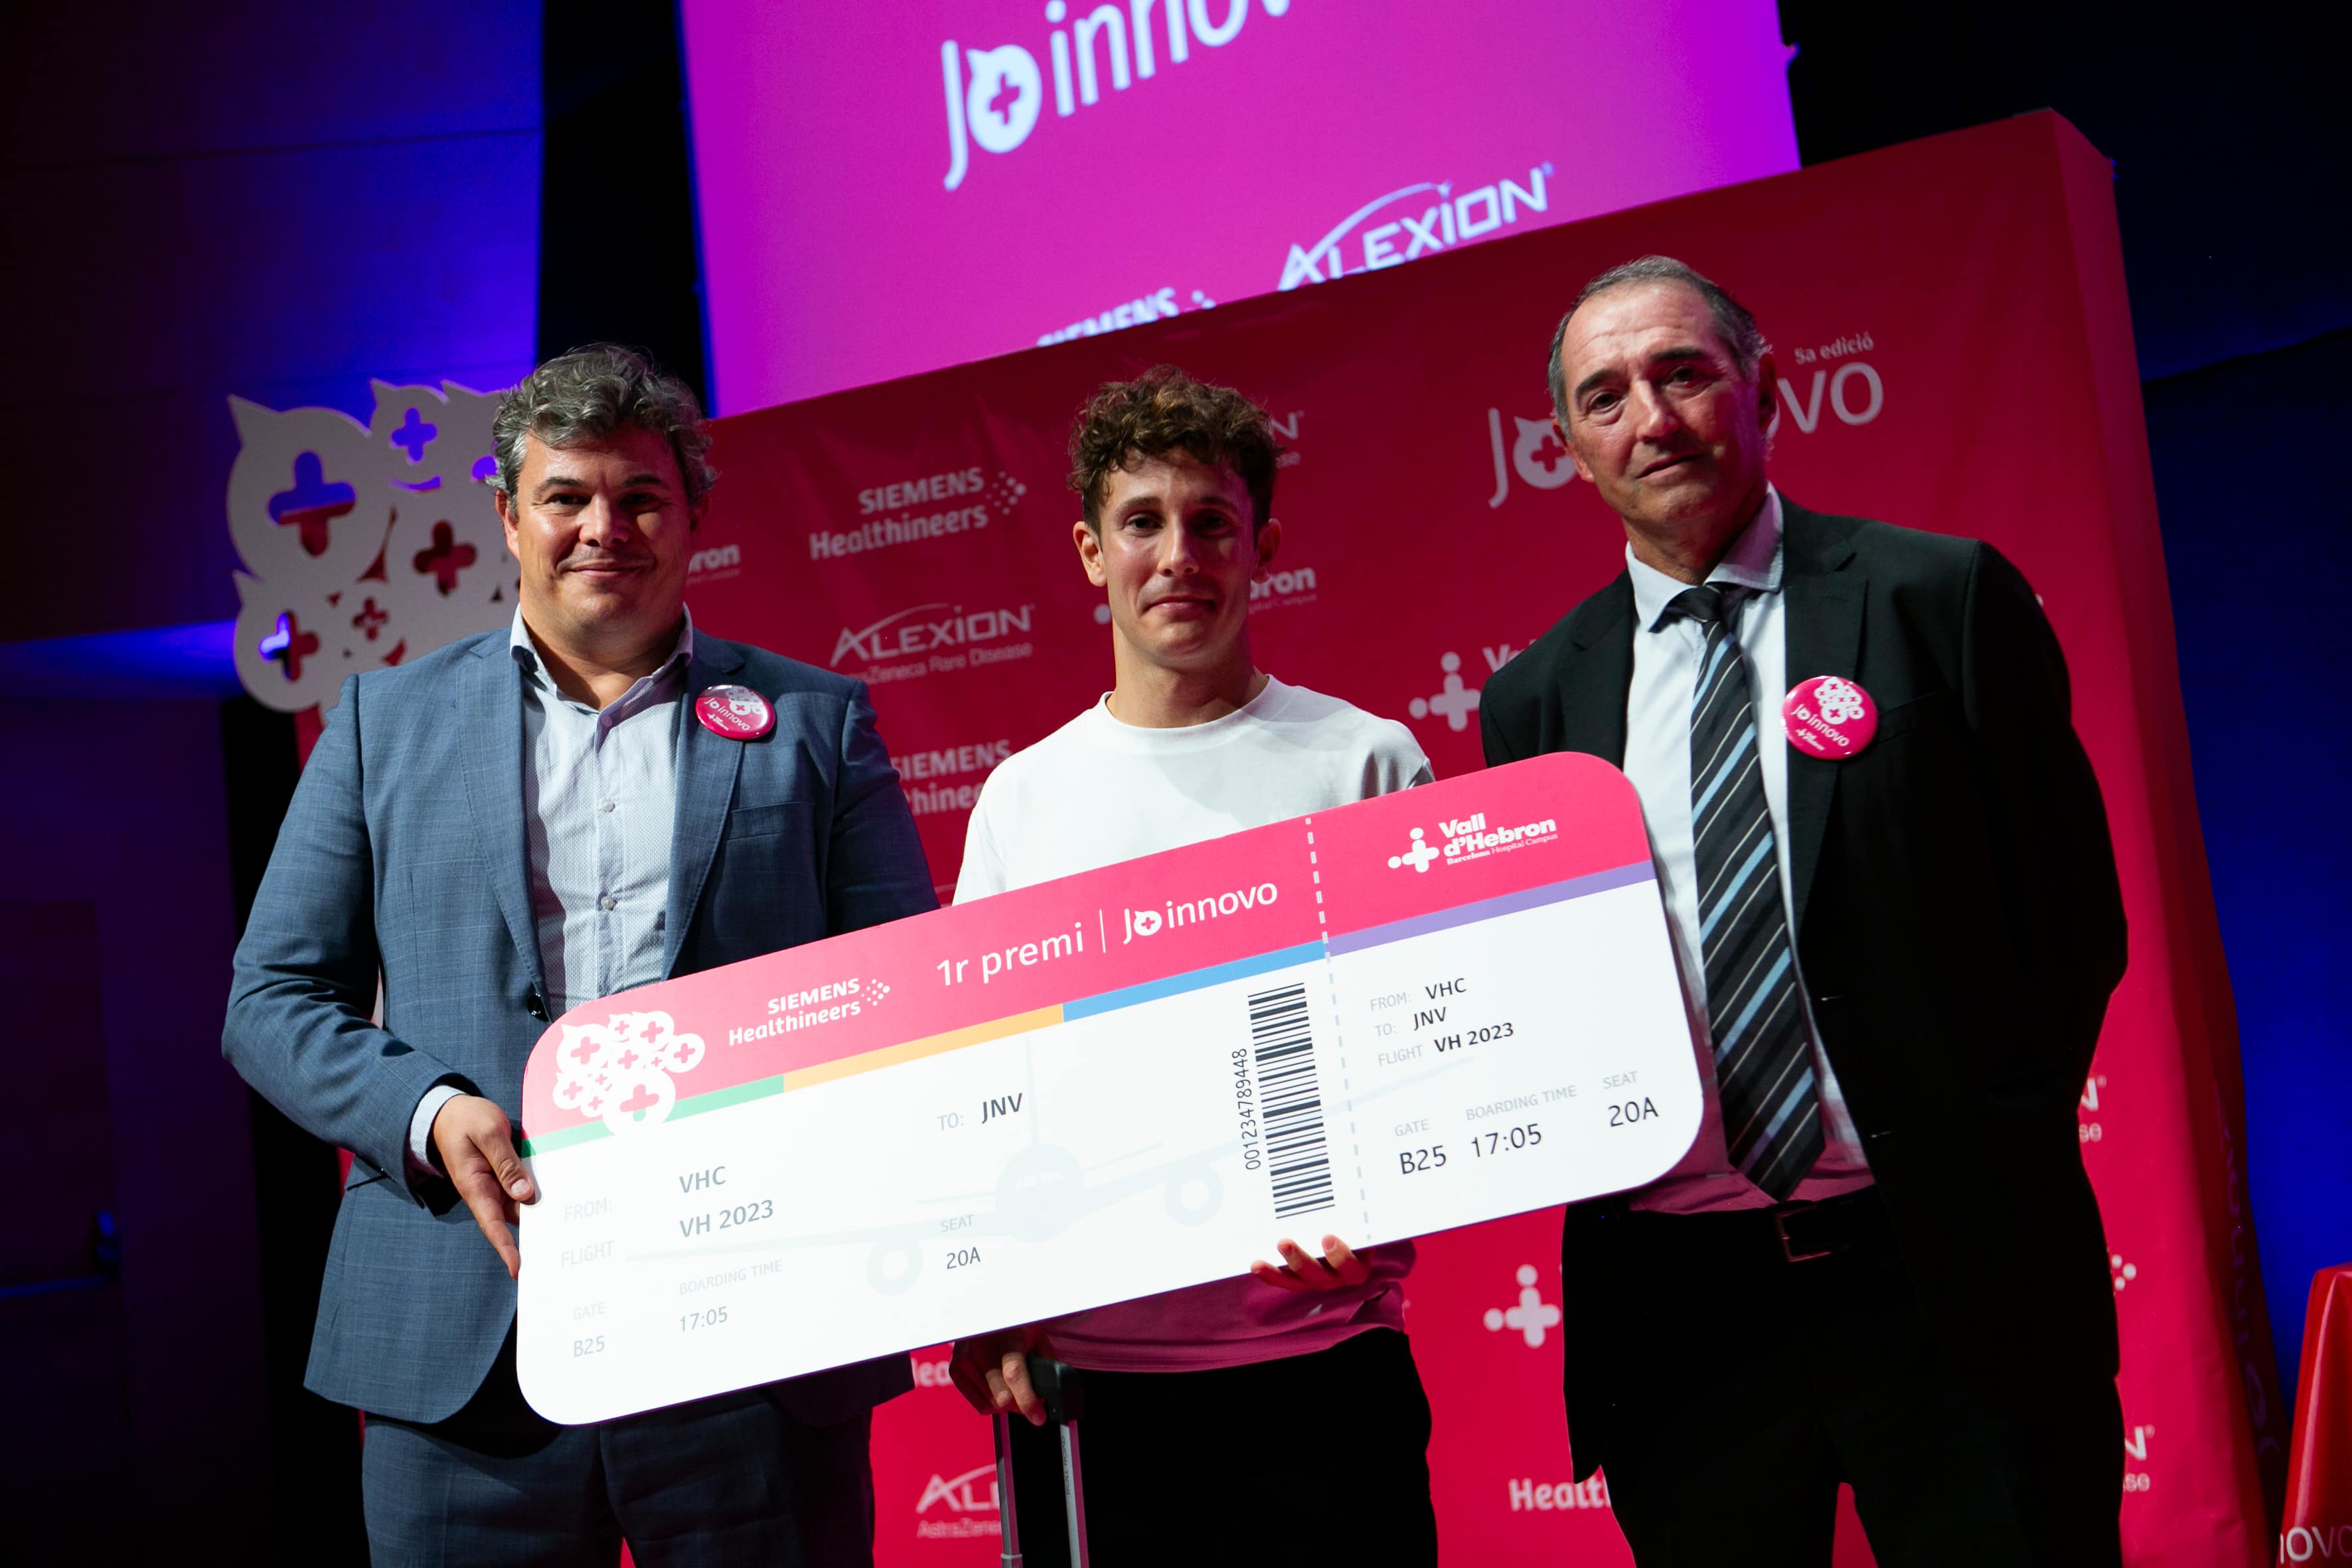 Marc Mendo, guanyador del Jo innovo 2023